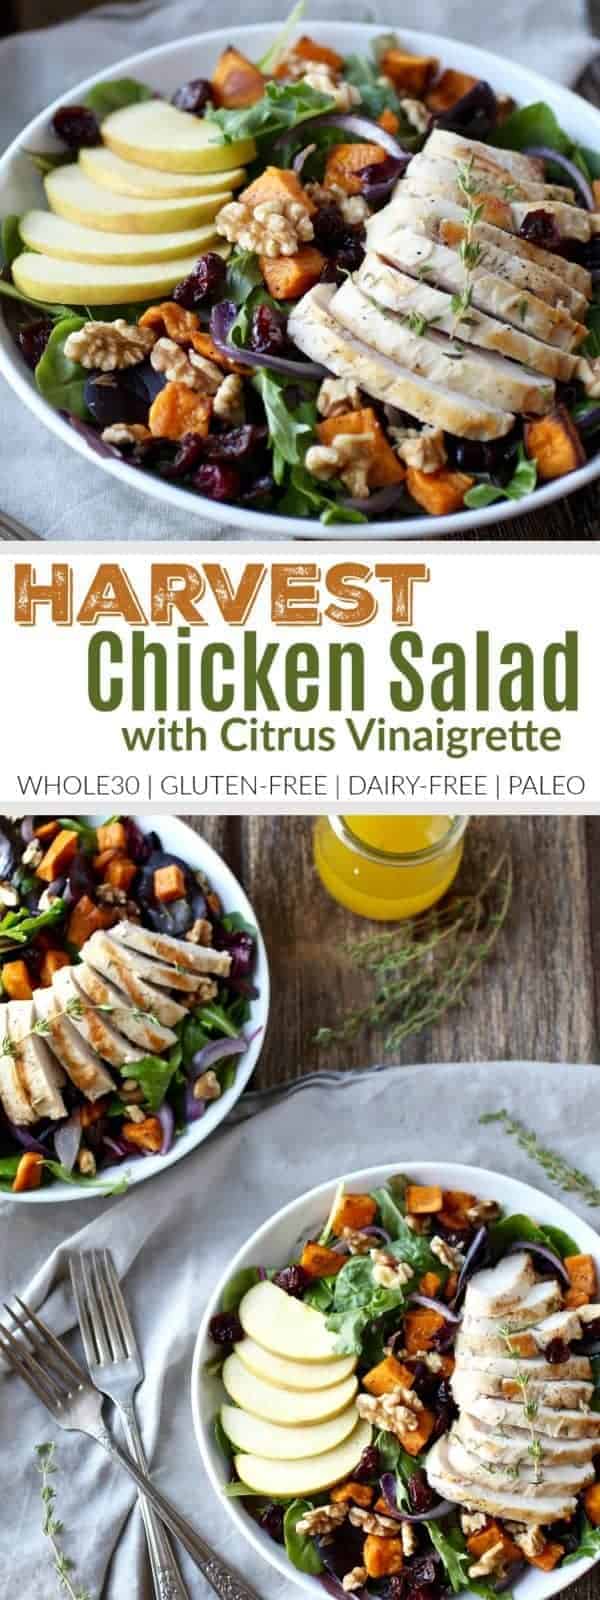 Whole30 Harvest Chicken Salad with Citrus Vinaigrette